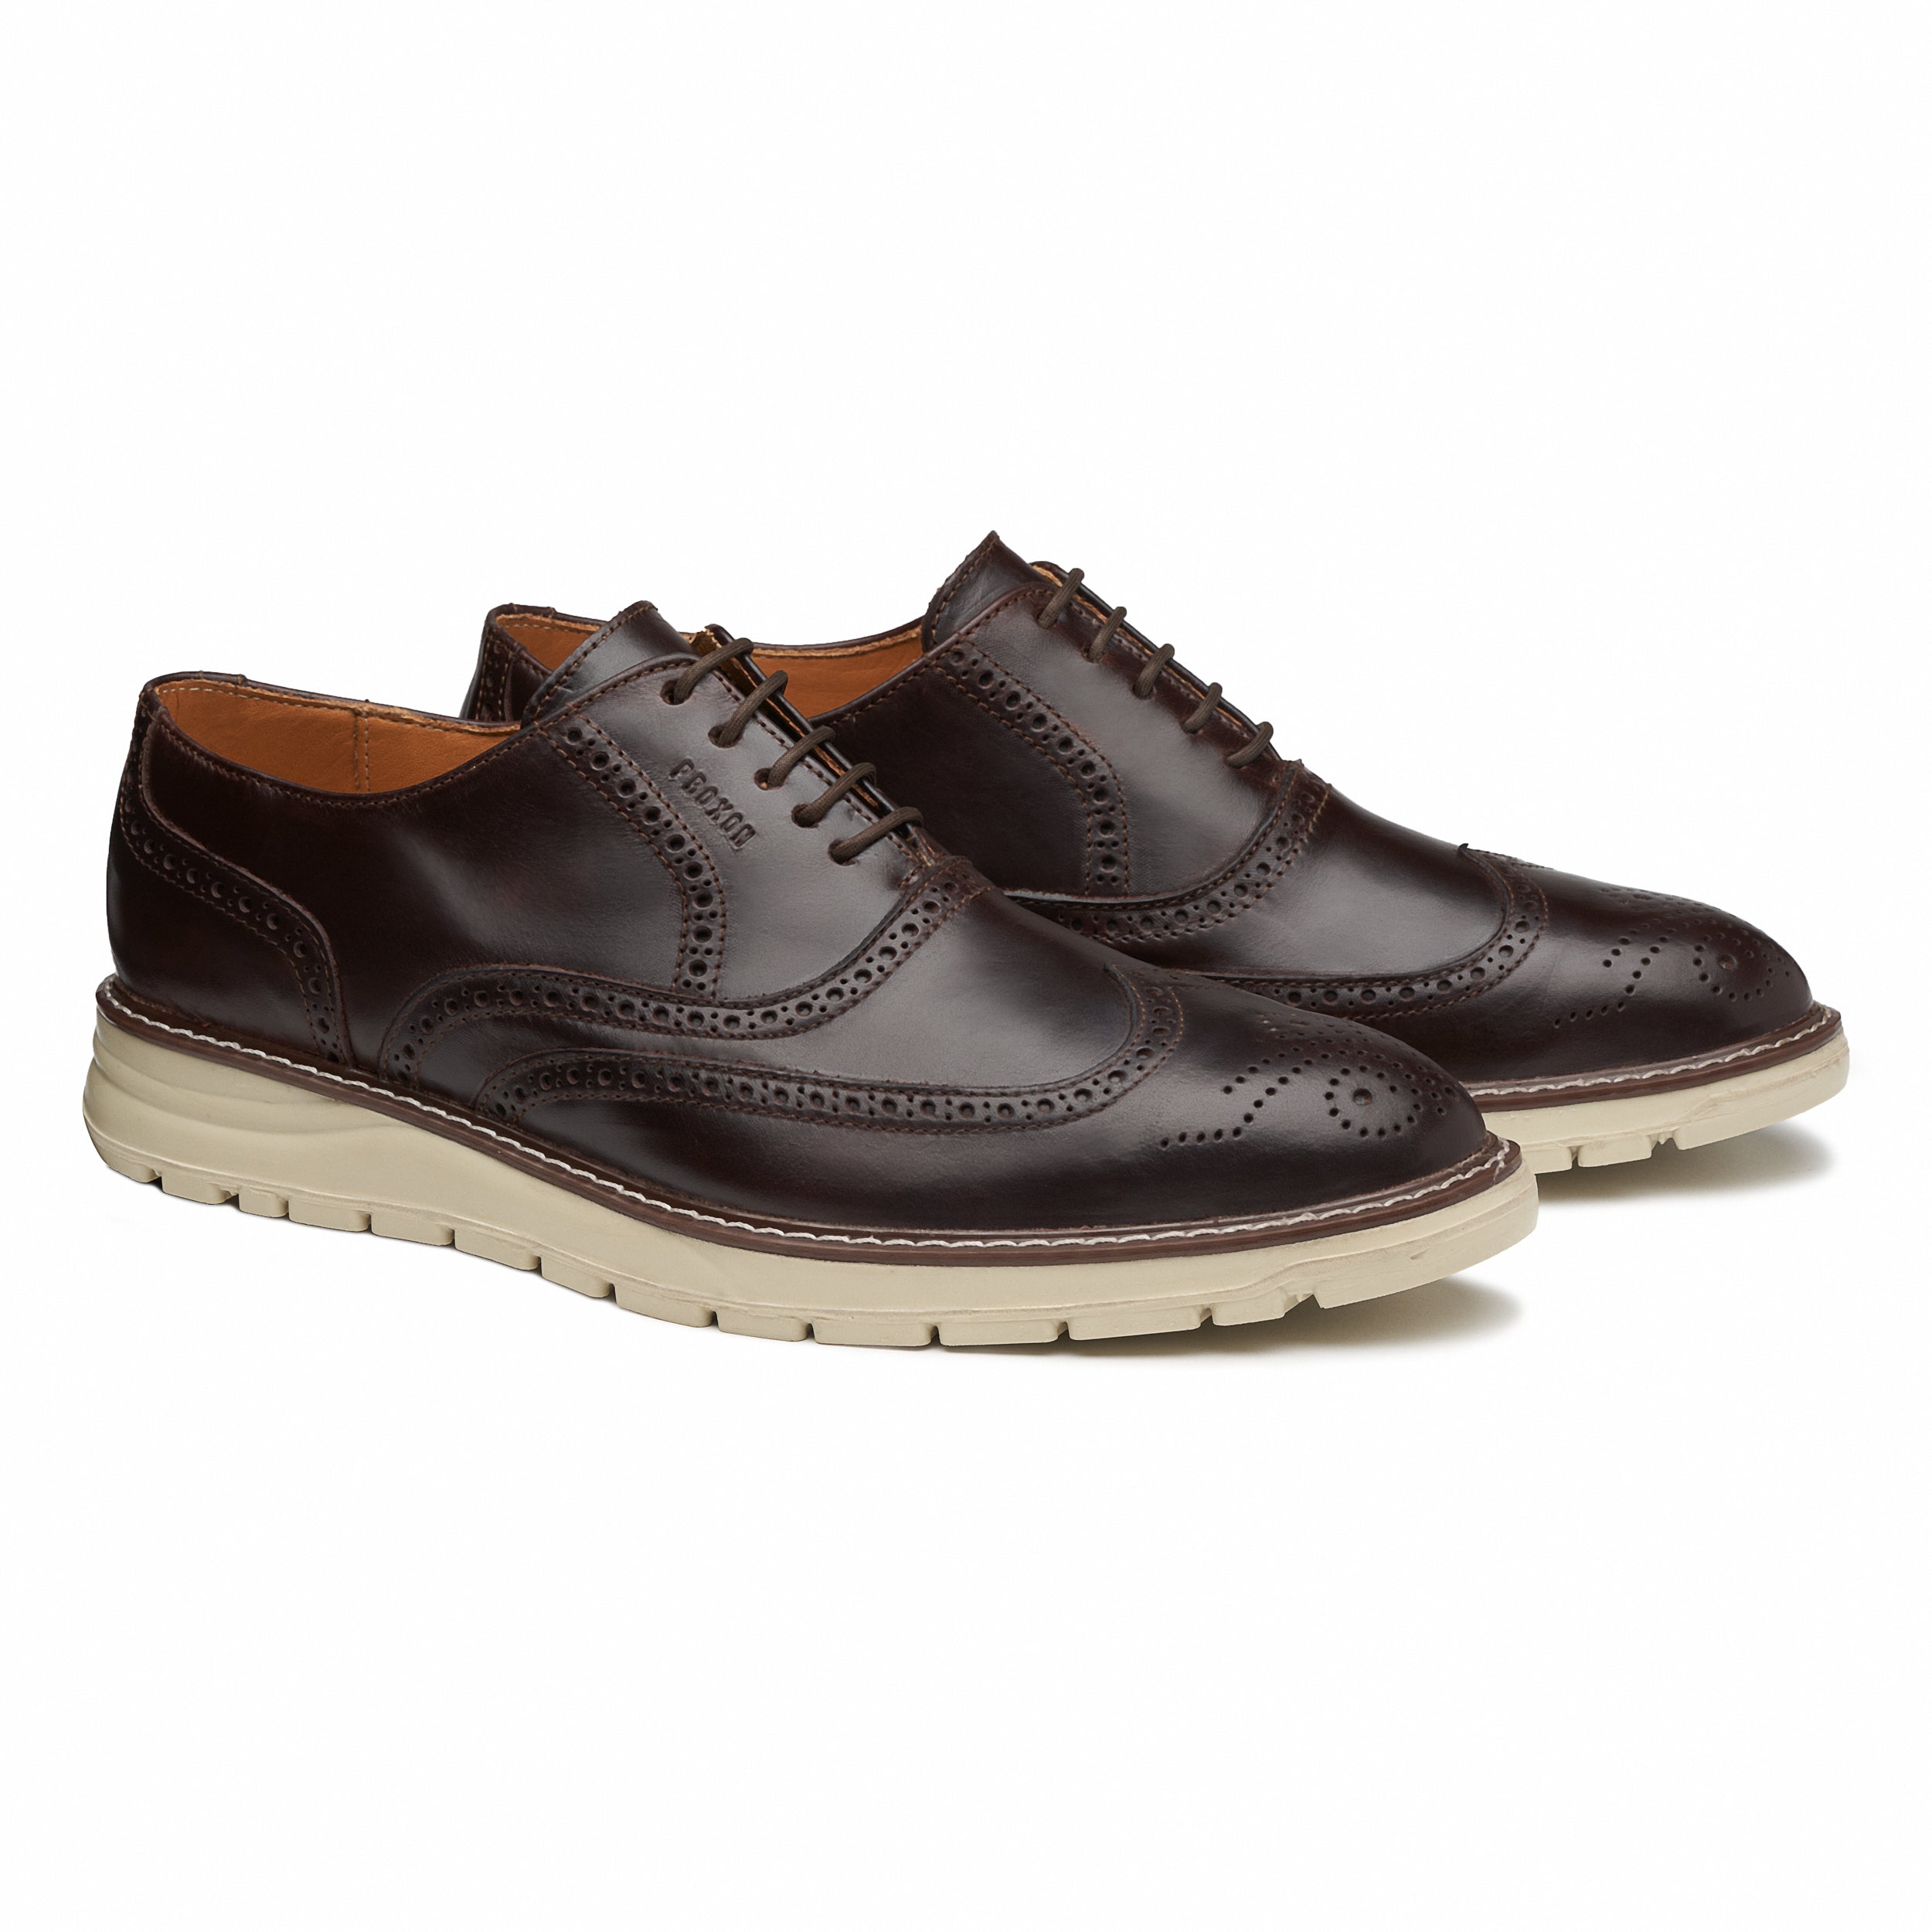 Dress Steel Toe Shoes | Oxford Steels | Men's